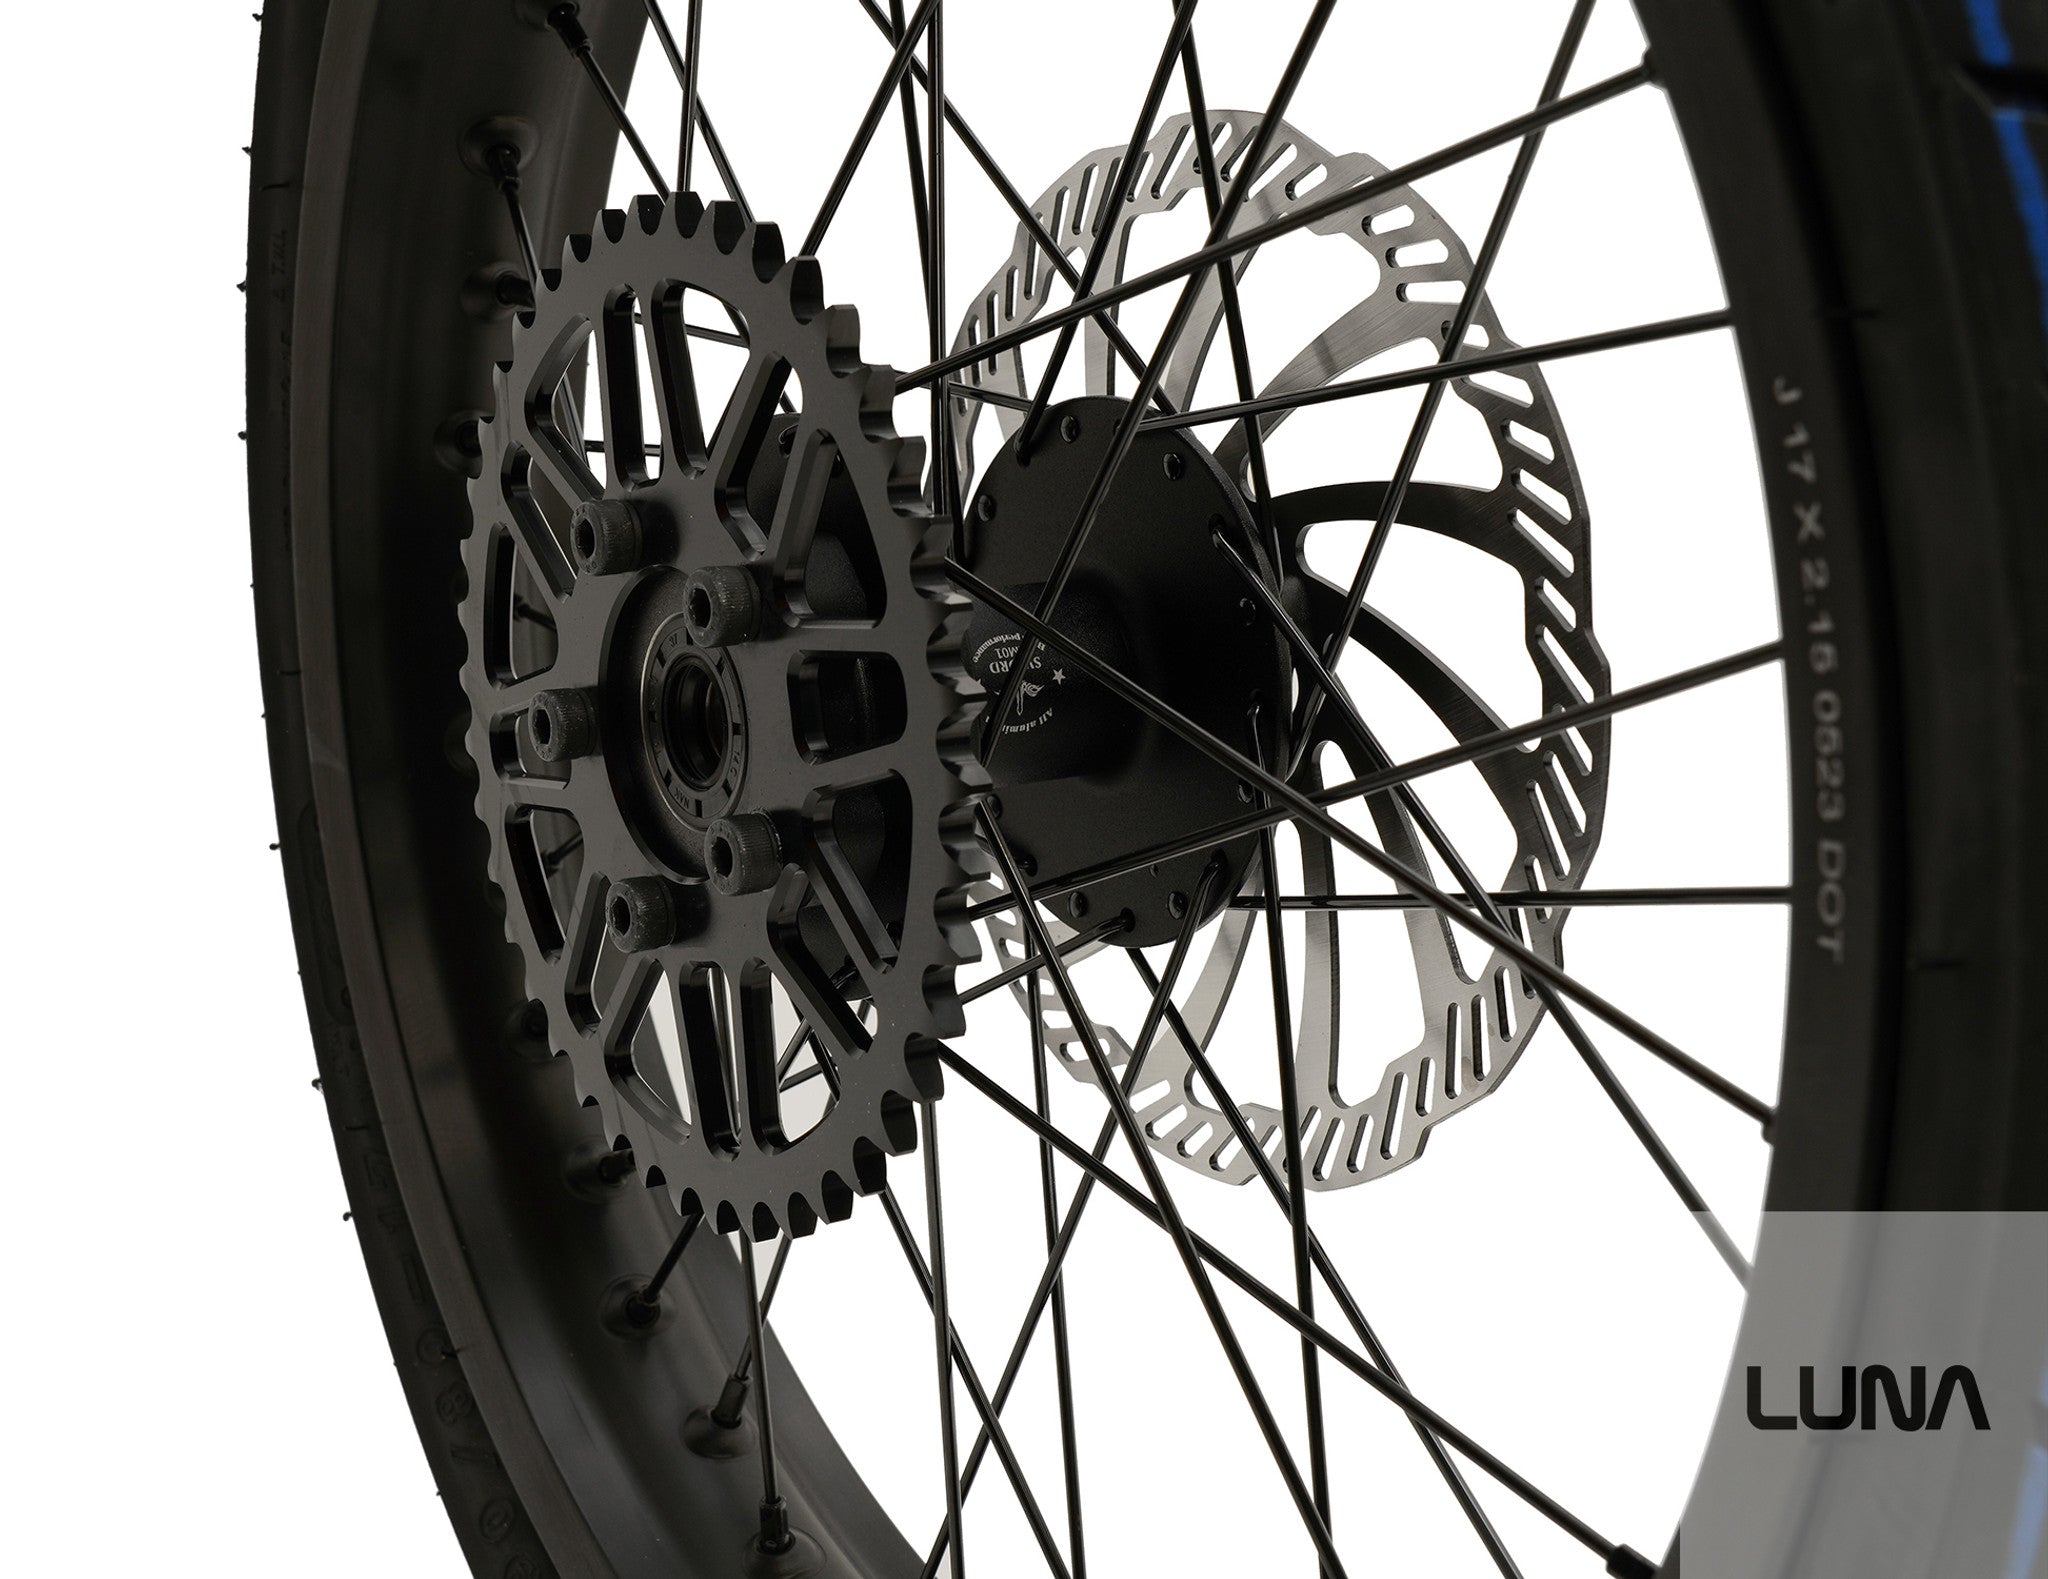 17in Super Moto Wheel set for Surron/ E-Ride Pro